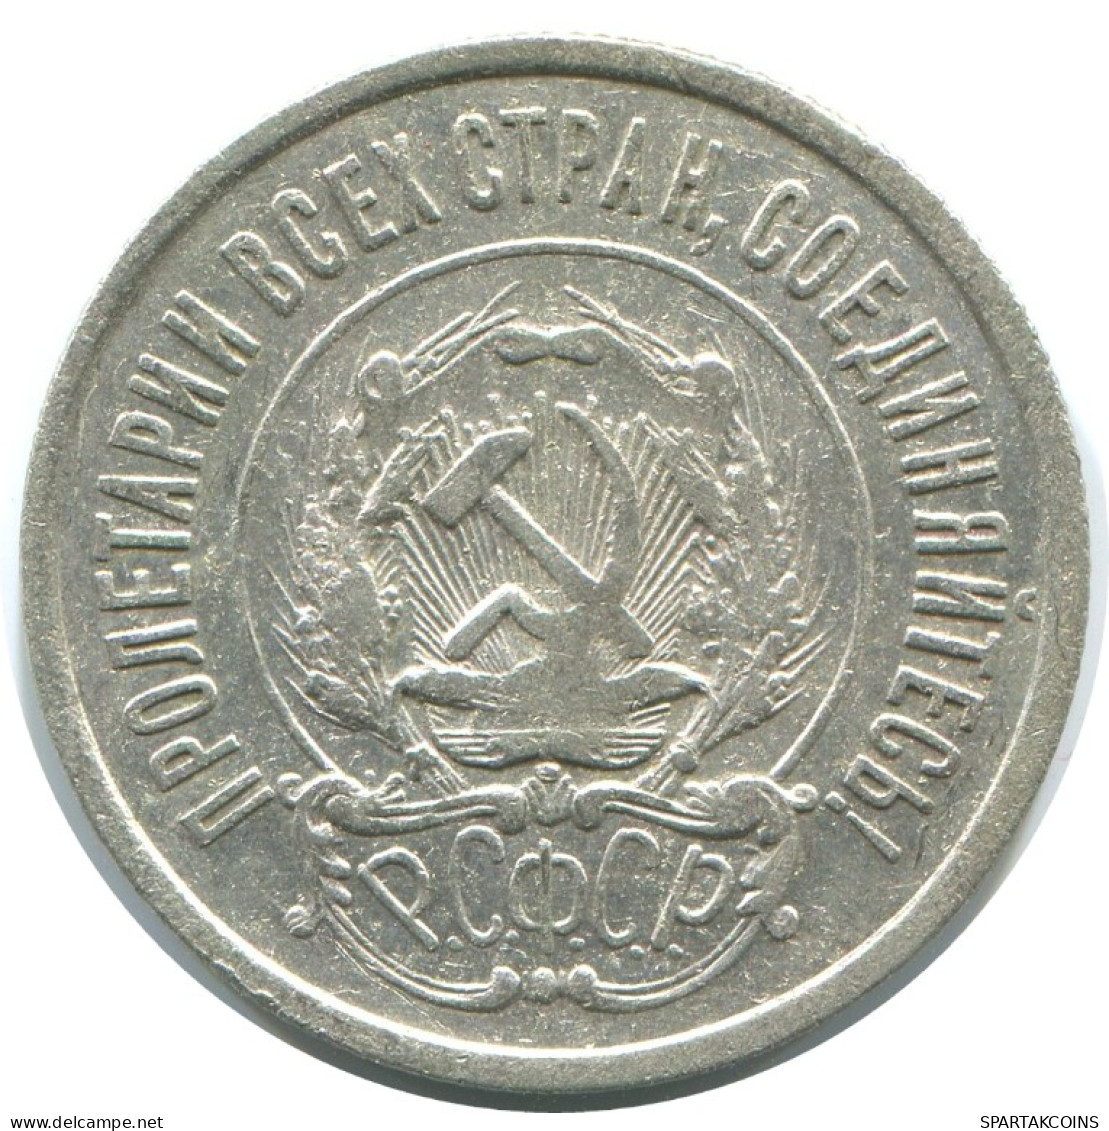 20 KOPEKS 1923 RUSIA RUSSIA RSFSR PLATA Moneda HIGH GRADE #AF387.4.E.A - Russland